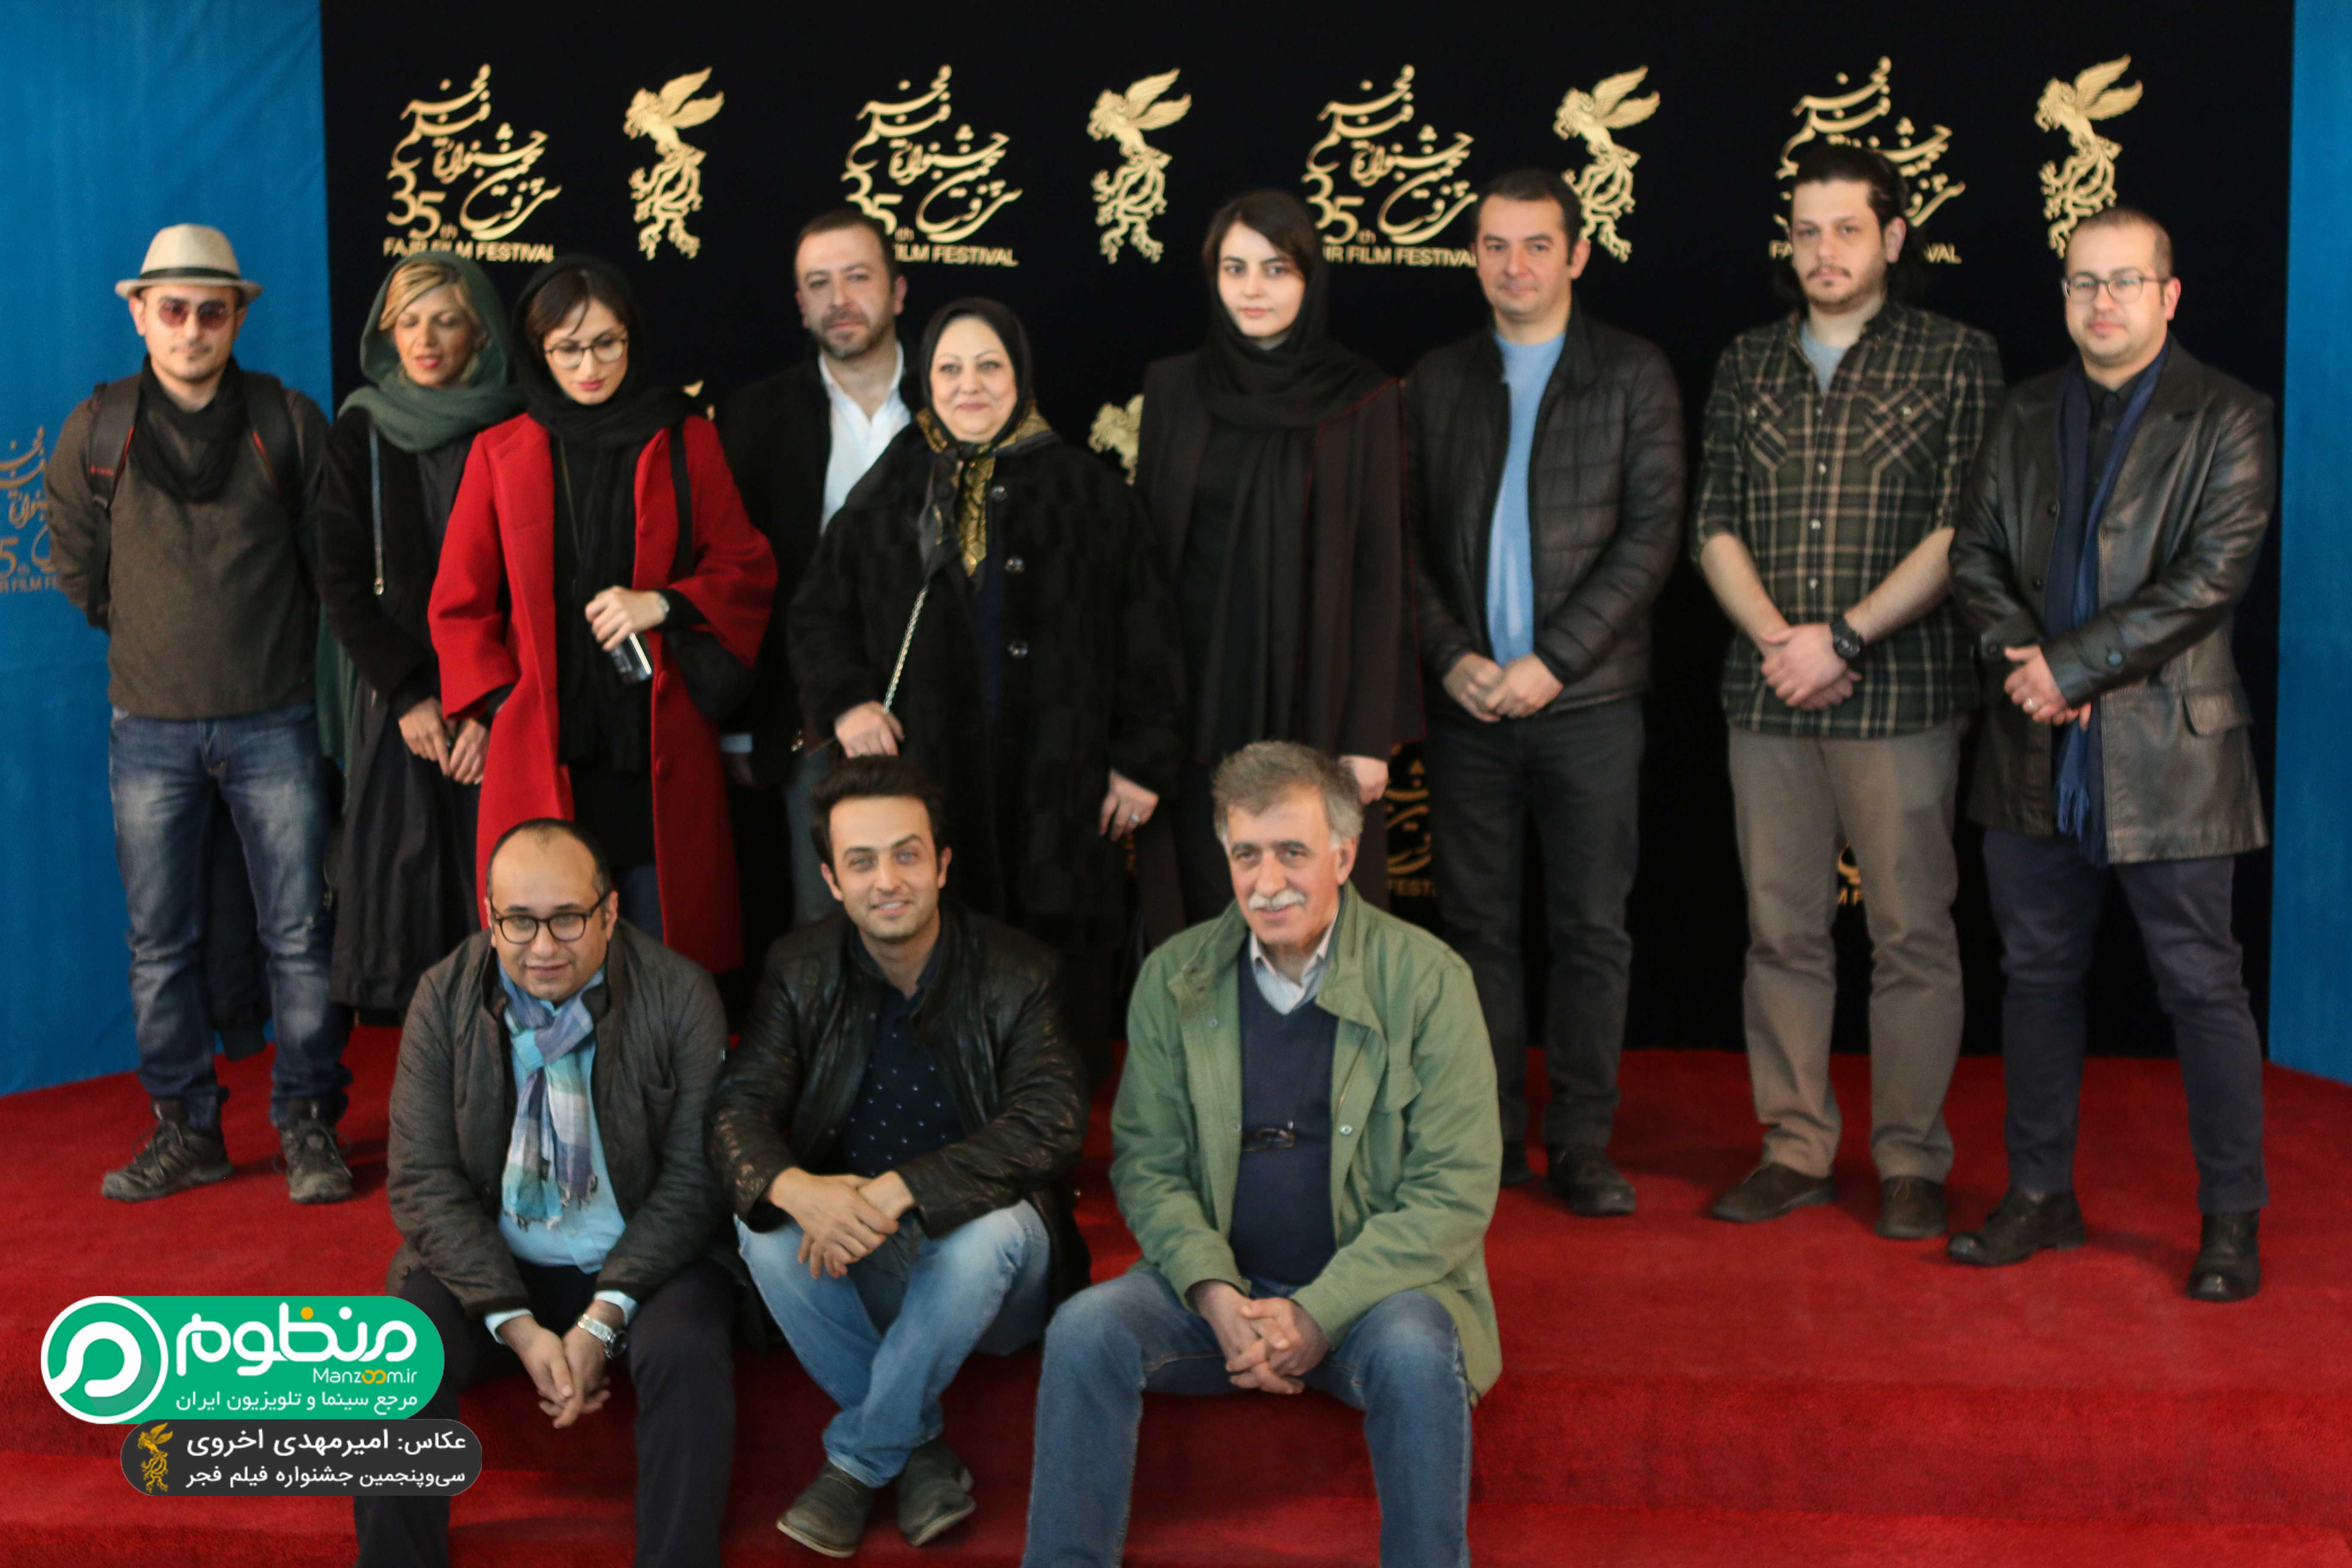 شیرین آقارضا کاشی در فرش قرمز فیلم سینمایی یک روز بخصوص به همراه افسانه کمالی، مازیار میری، همایون اسعدیان و مصطفی زمانی